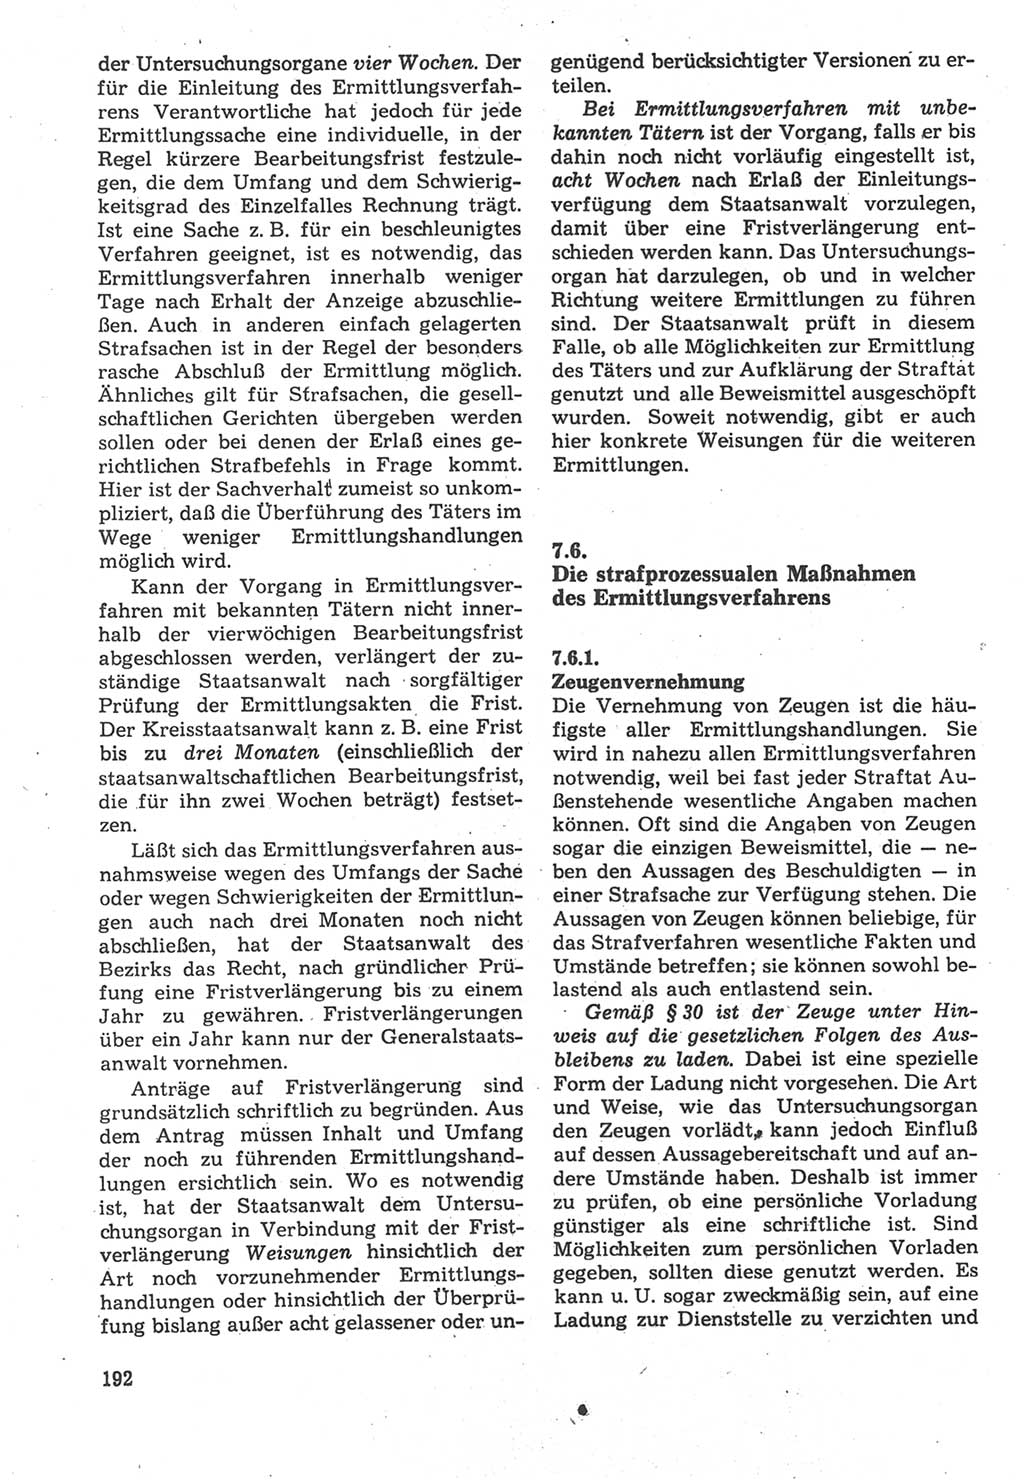 Strafverfahrensrecht [Deutsche Demokratische Republik (DDR)], Lehrbuch 1987, Seite 192 (Strafverf.-R. DDR Lb. 1987, S. 192)